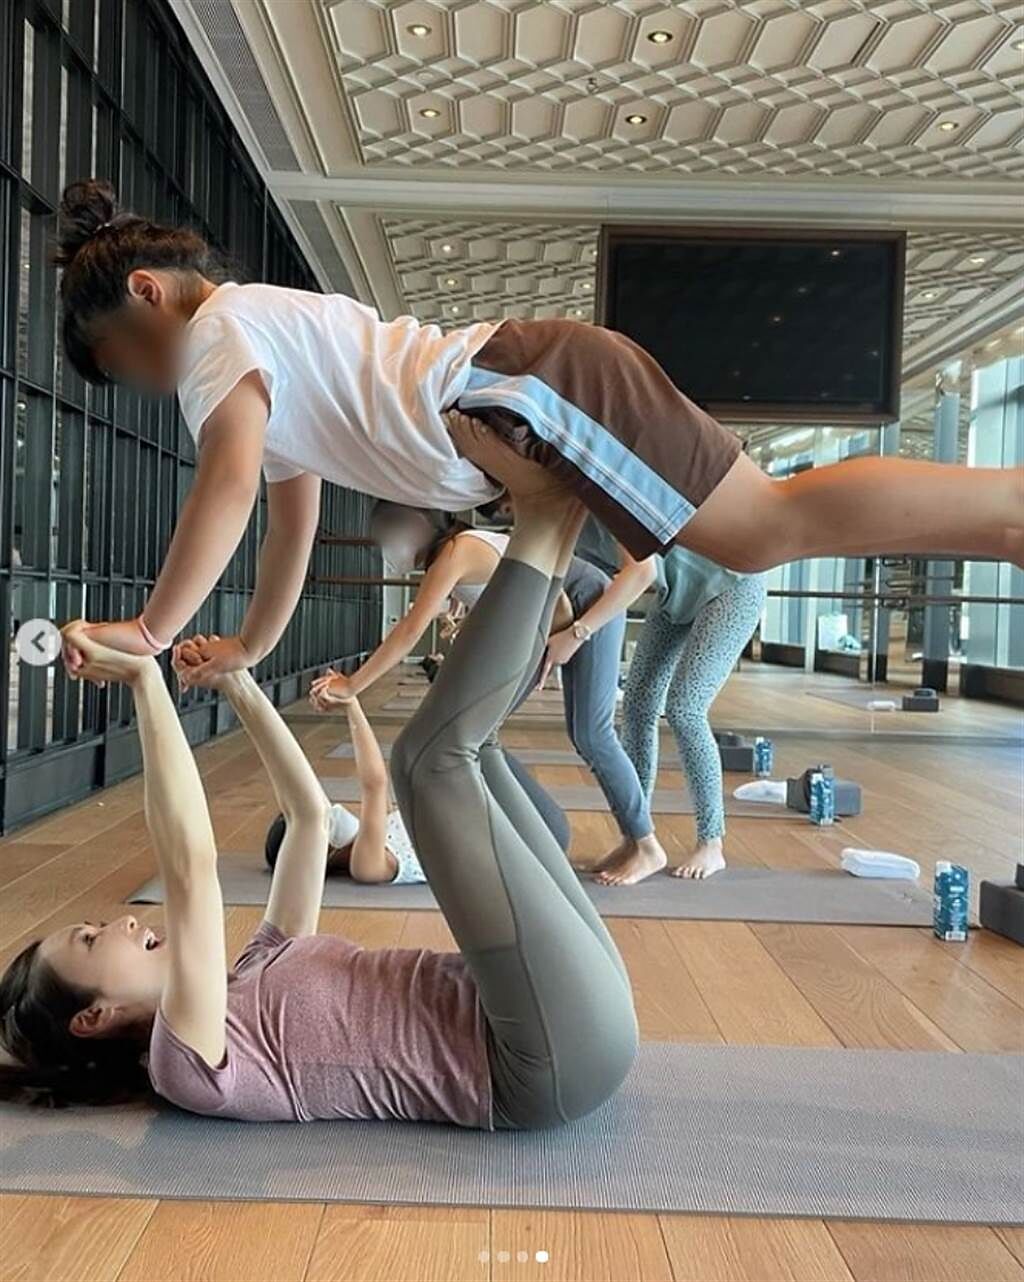 黎姿帶著3個女兒一起做瑜珈，做出各種高難度動作完全看不出她已經50歲，身材狀態超不科學。(圖/ 摘自黎姿IG)